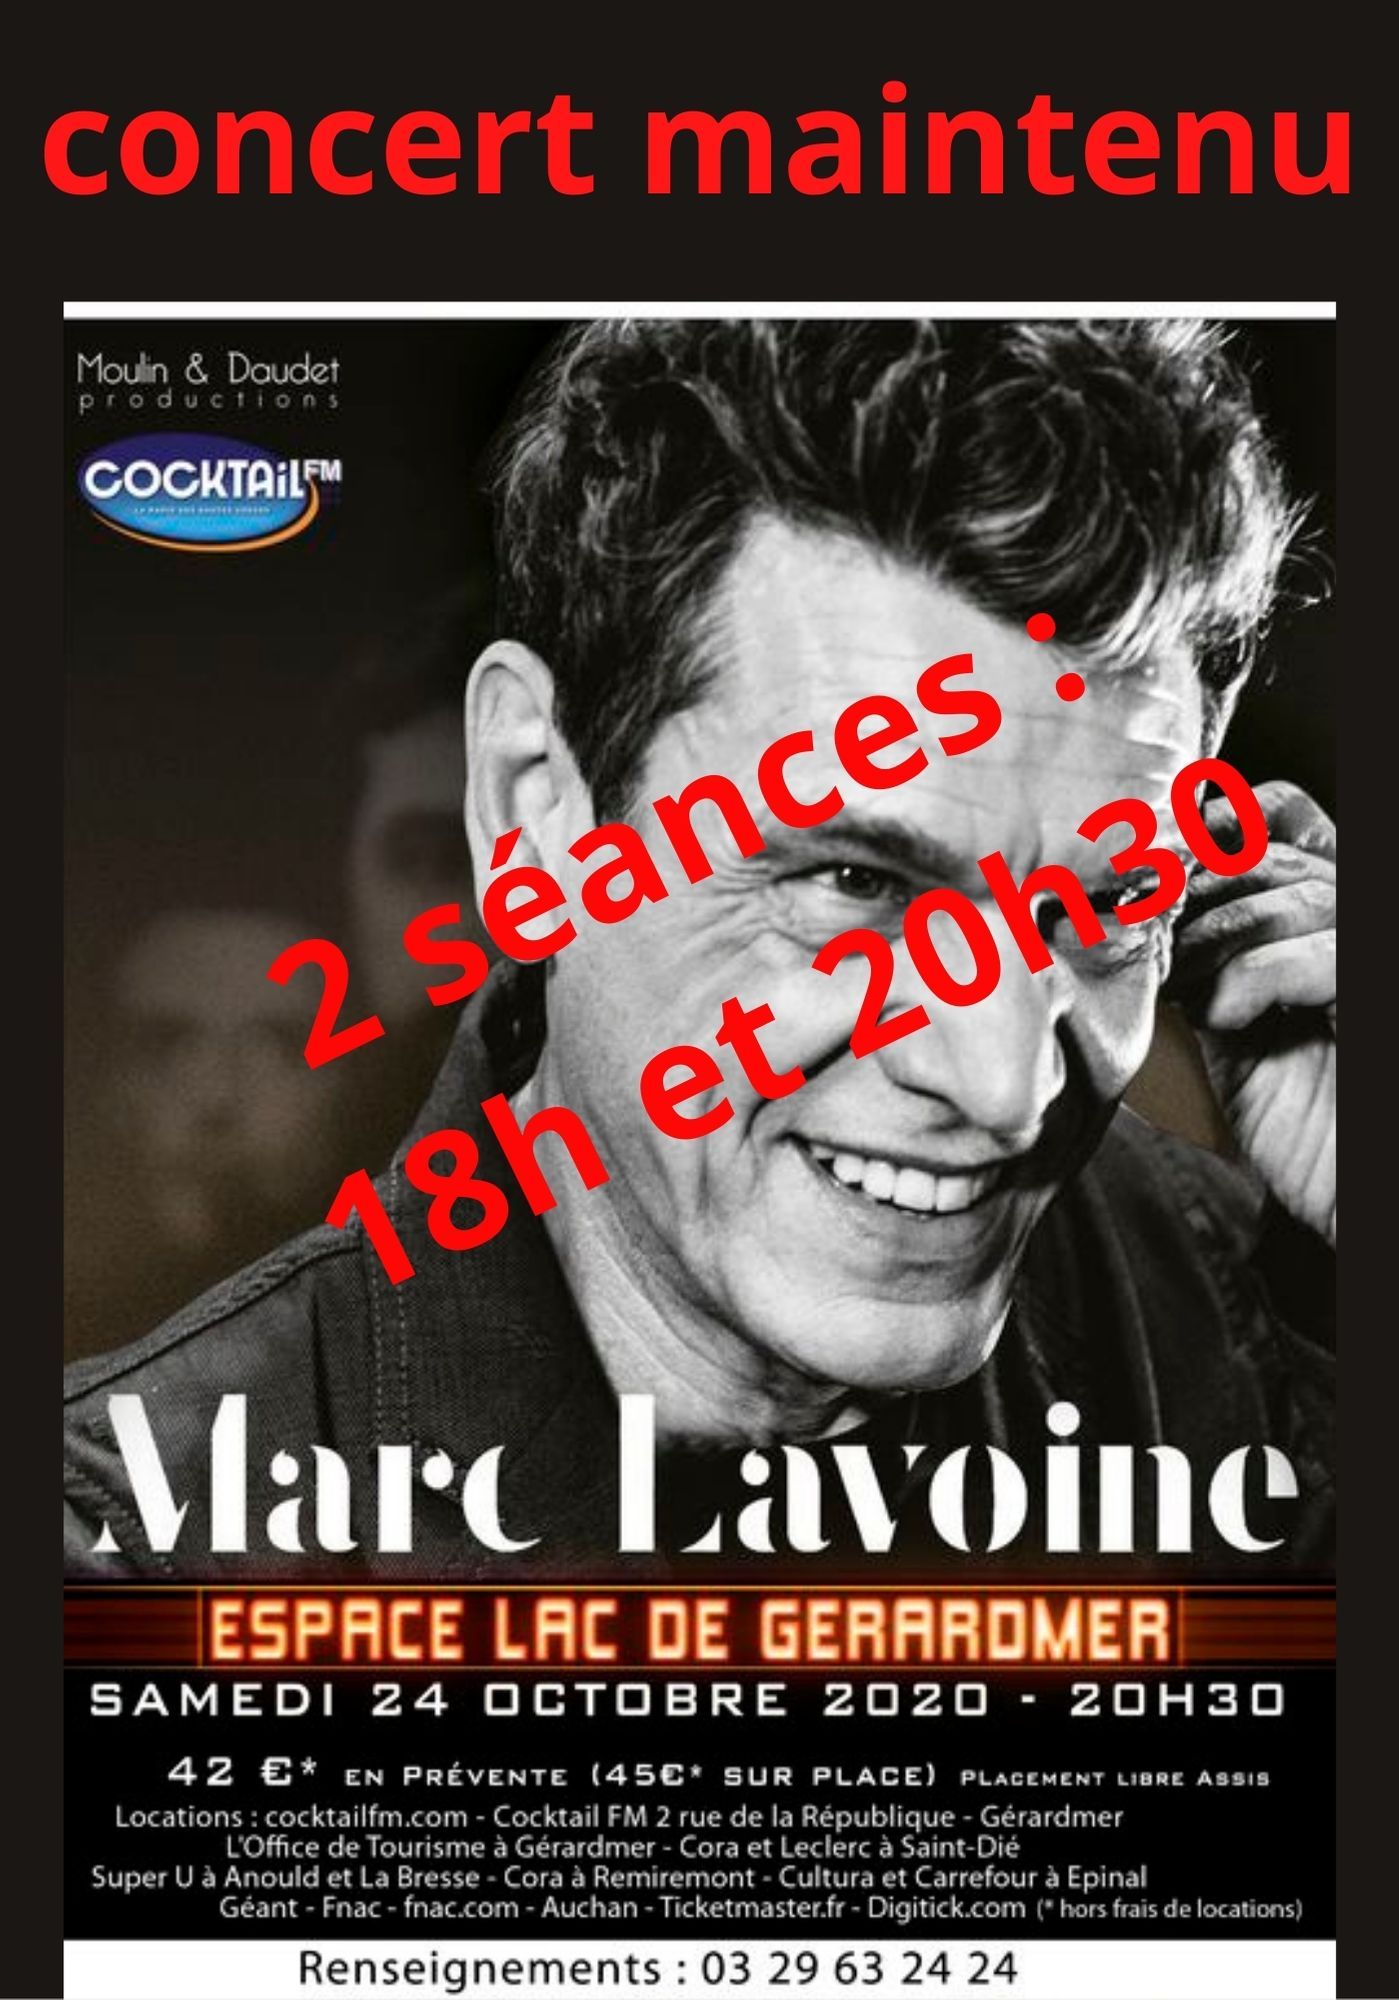 Concert de Marc Lavoine maintenu à Gérardmer le 24 octobre